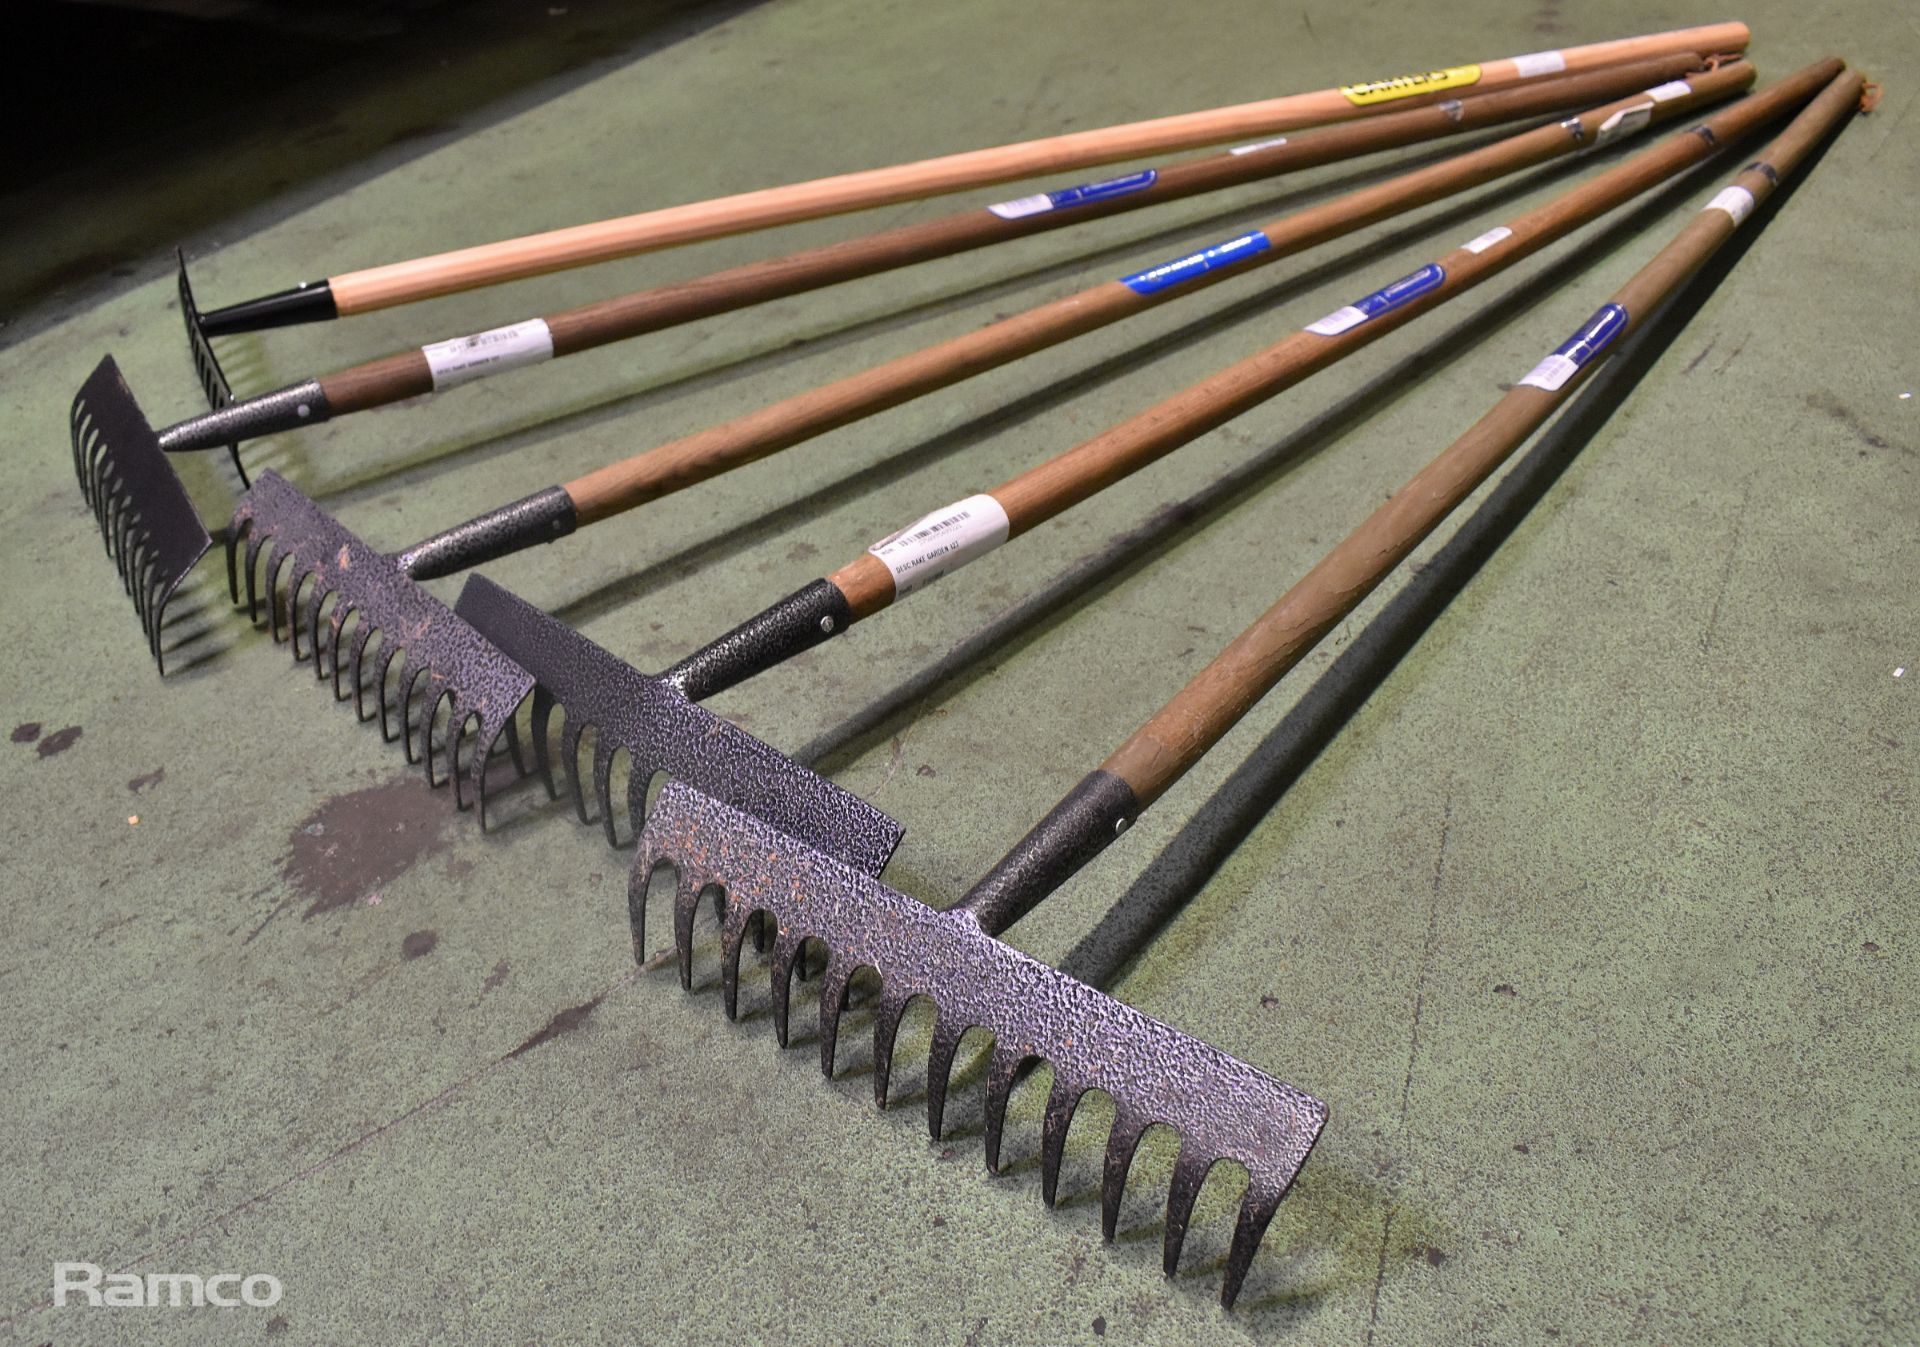 Carter's wooden handle garden rake, 3x Draper carbon steel garden rakes with ash handle - Image 2 of 3